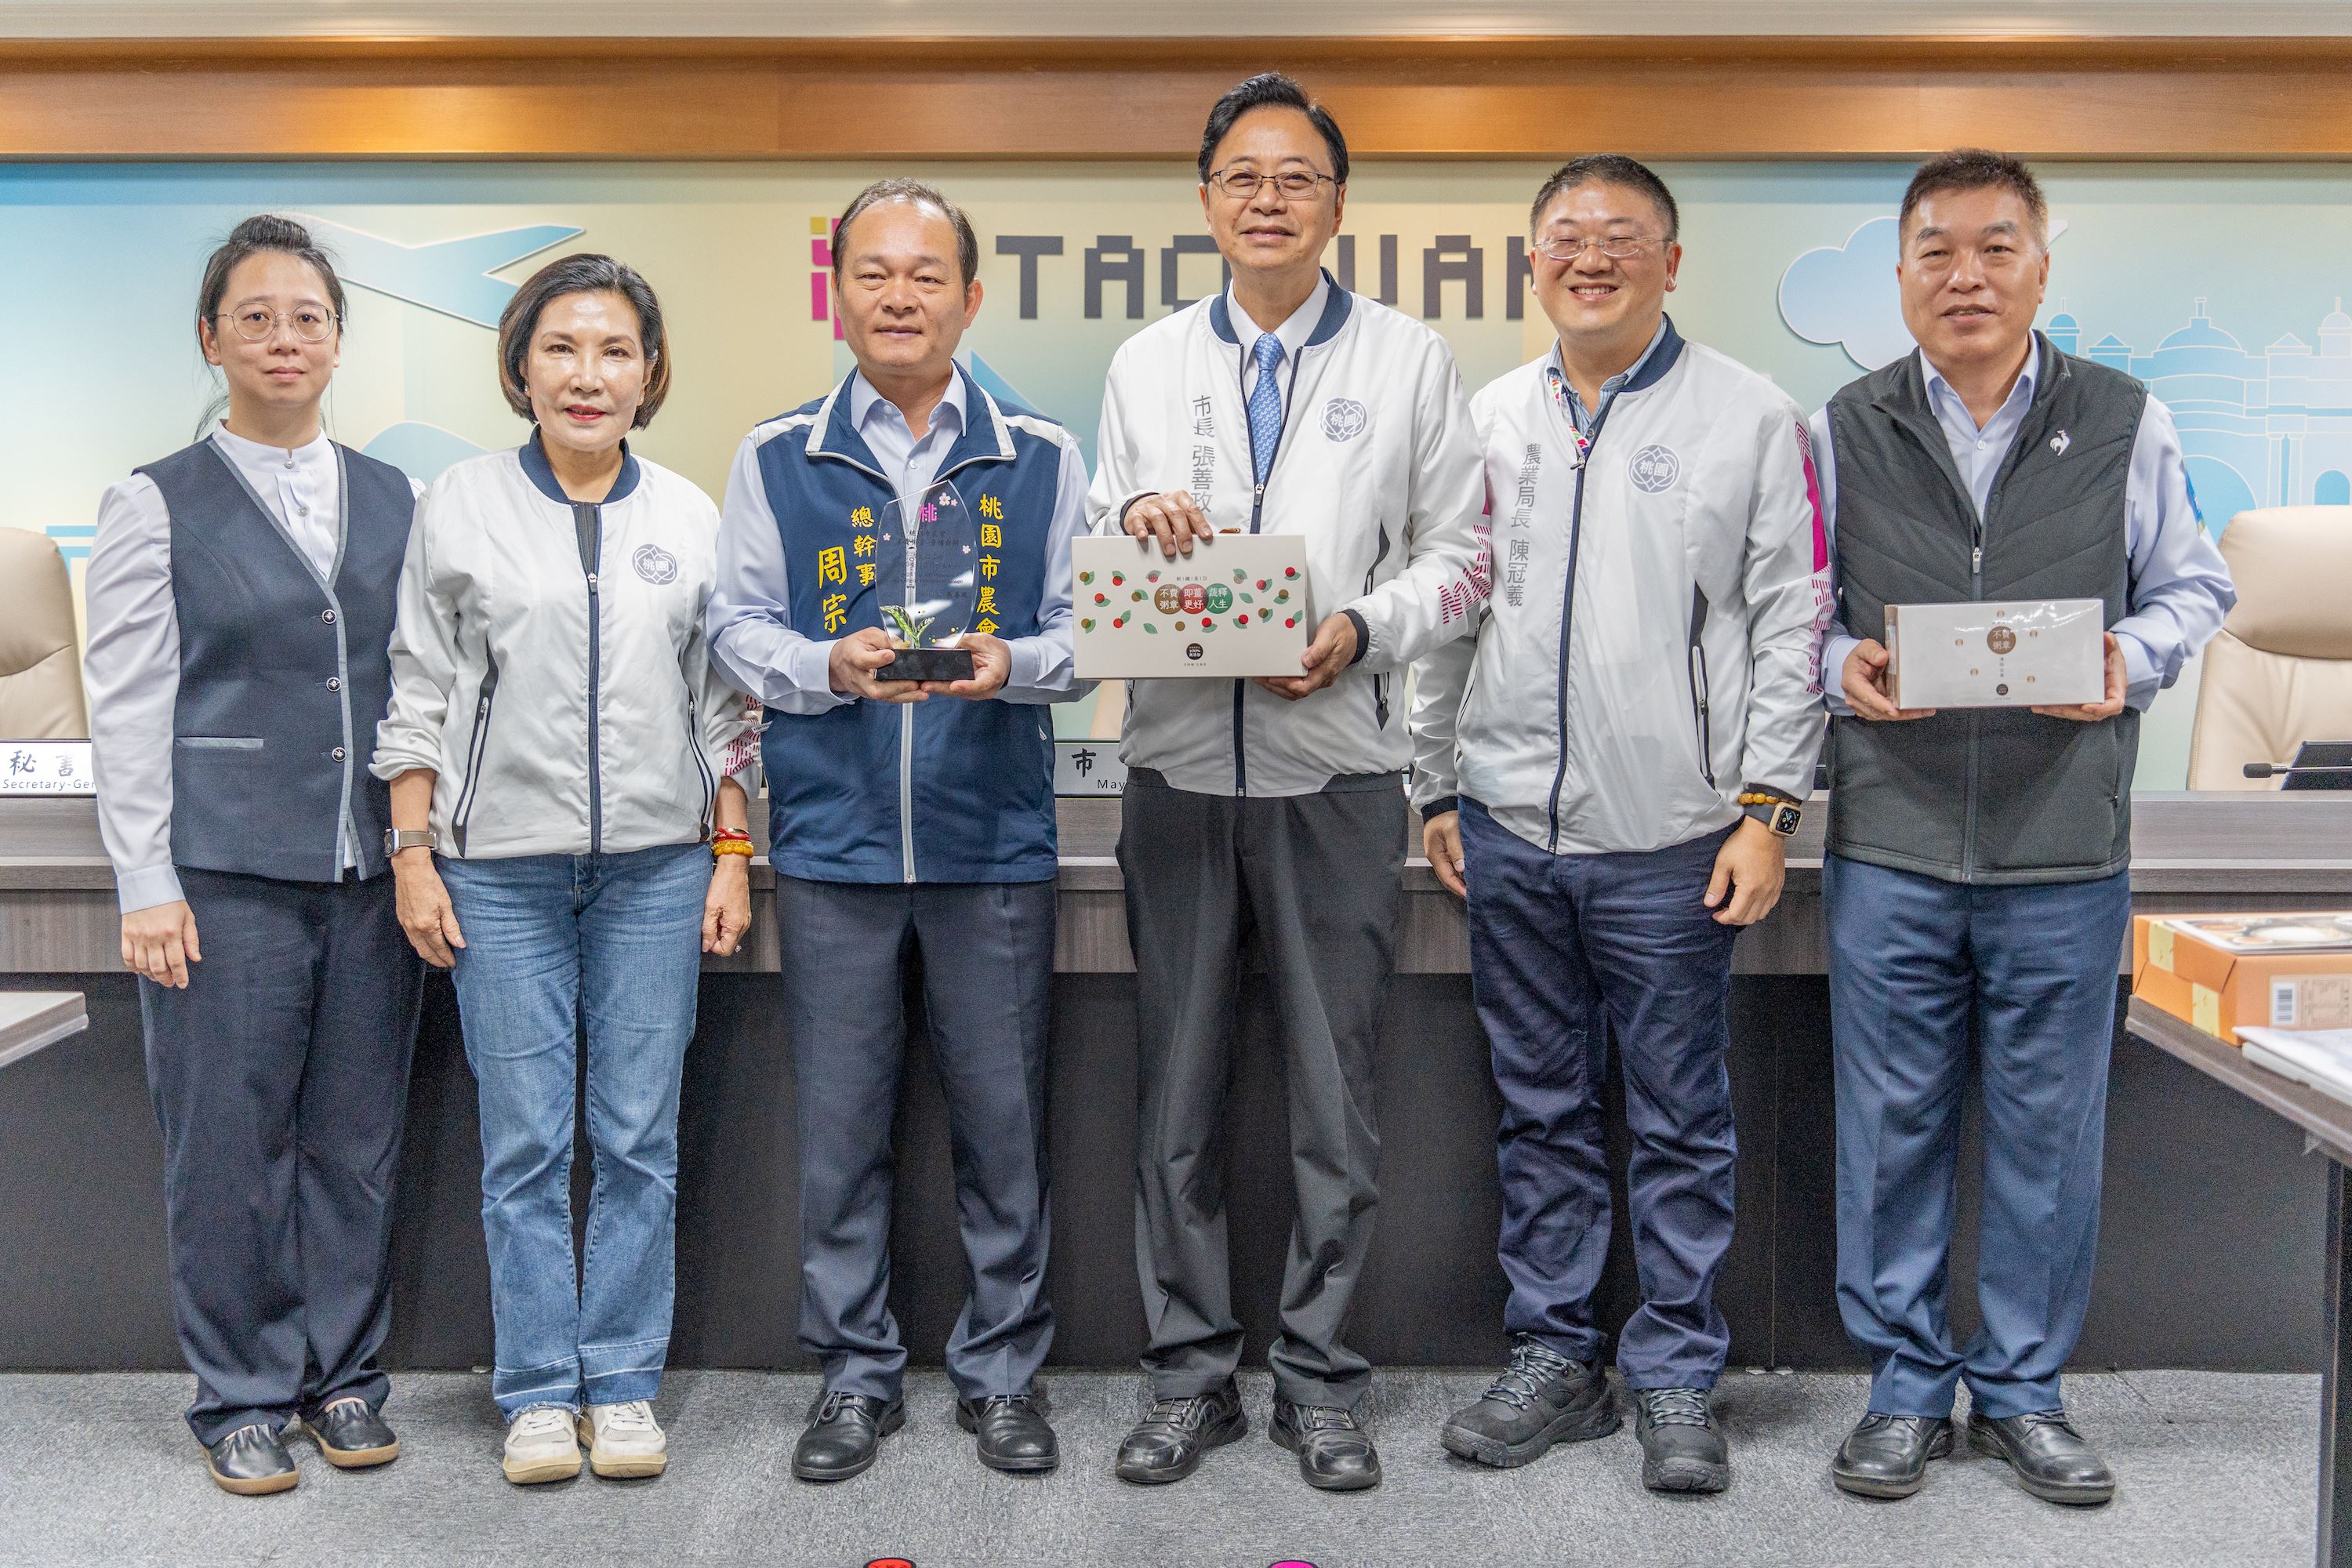 「臺灣農會百大精品」 桃園獲選三項  張市長鼓勵各界支持在地農產品